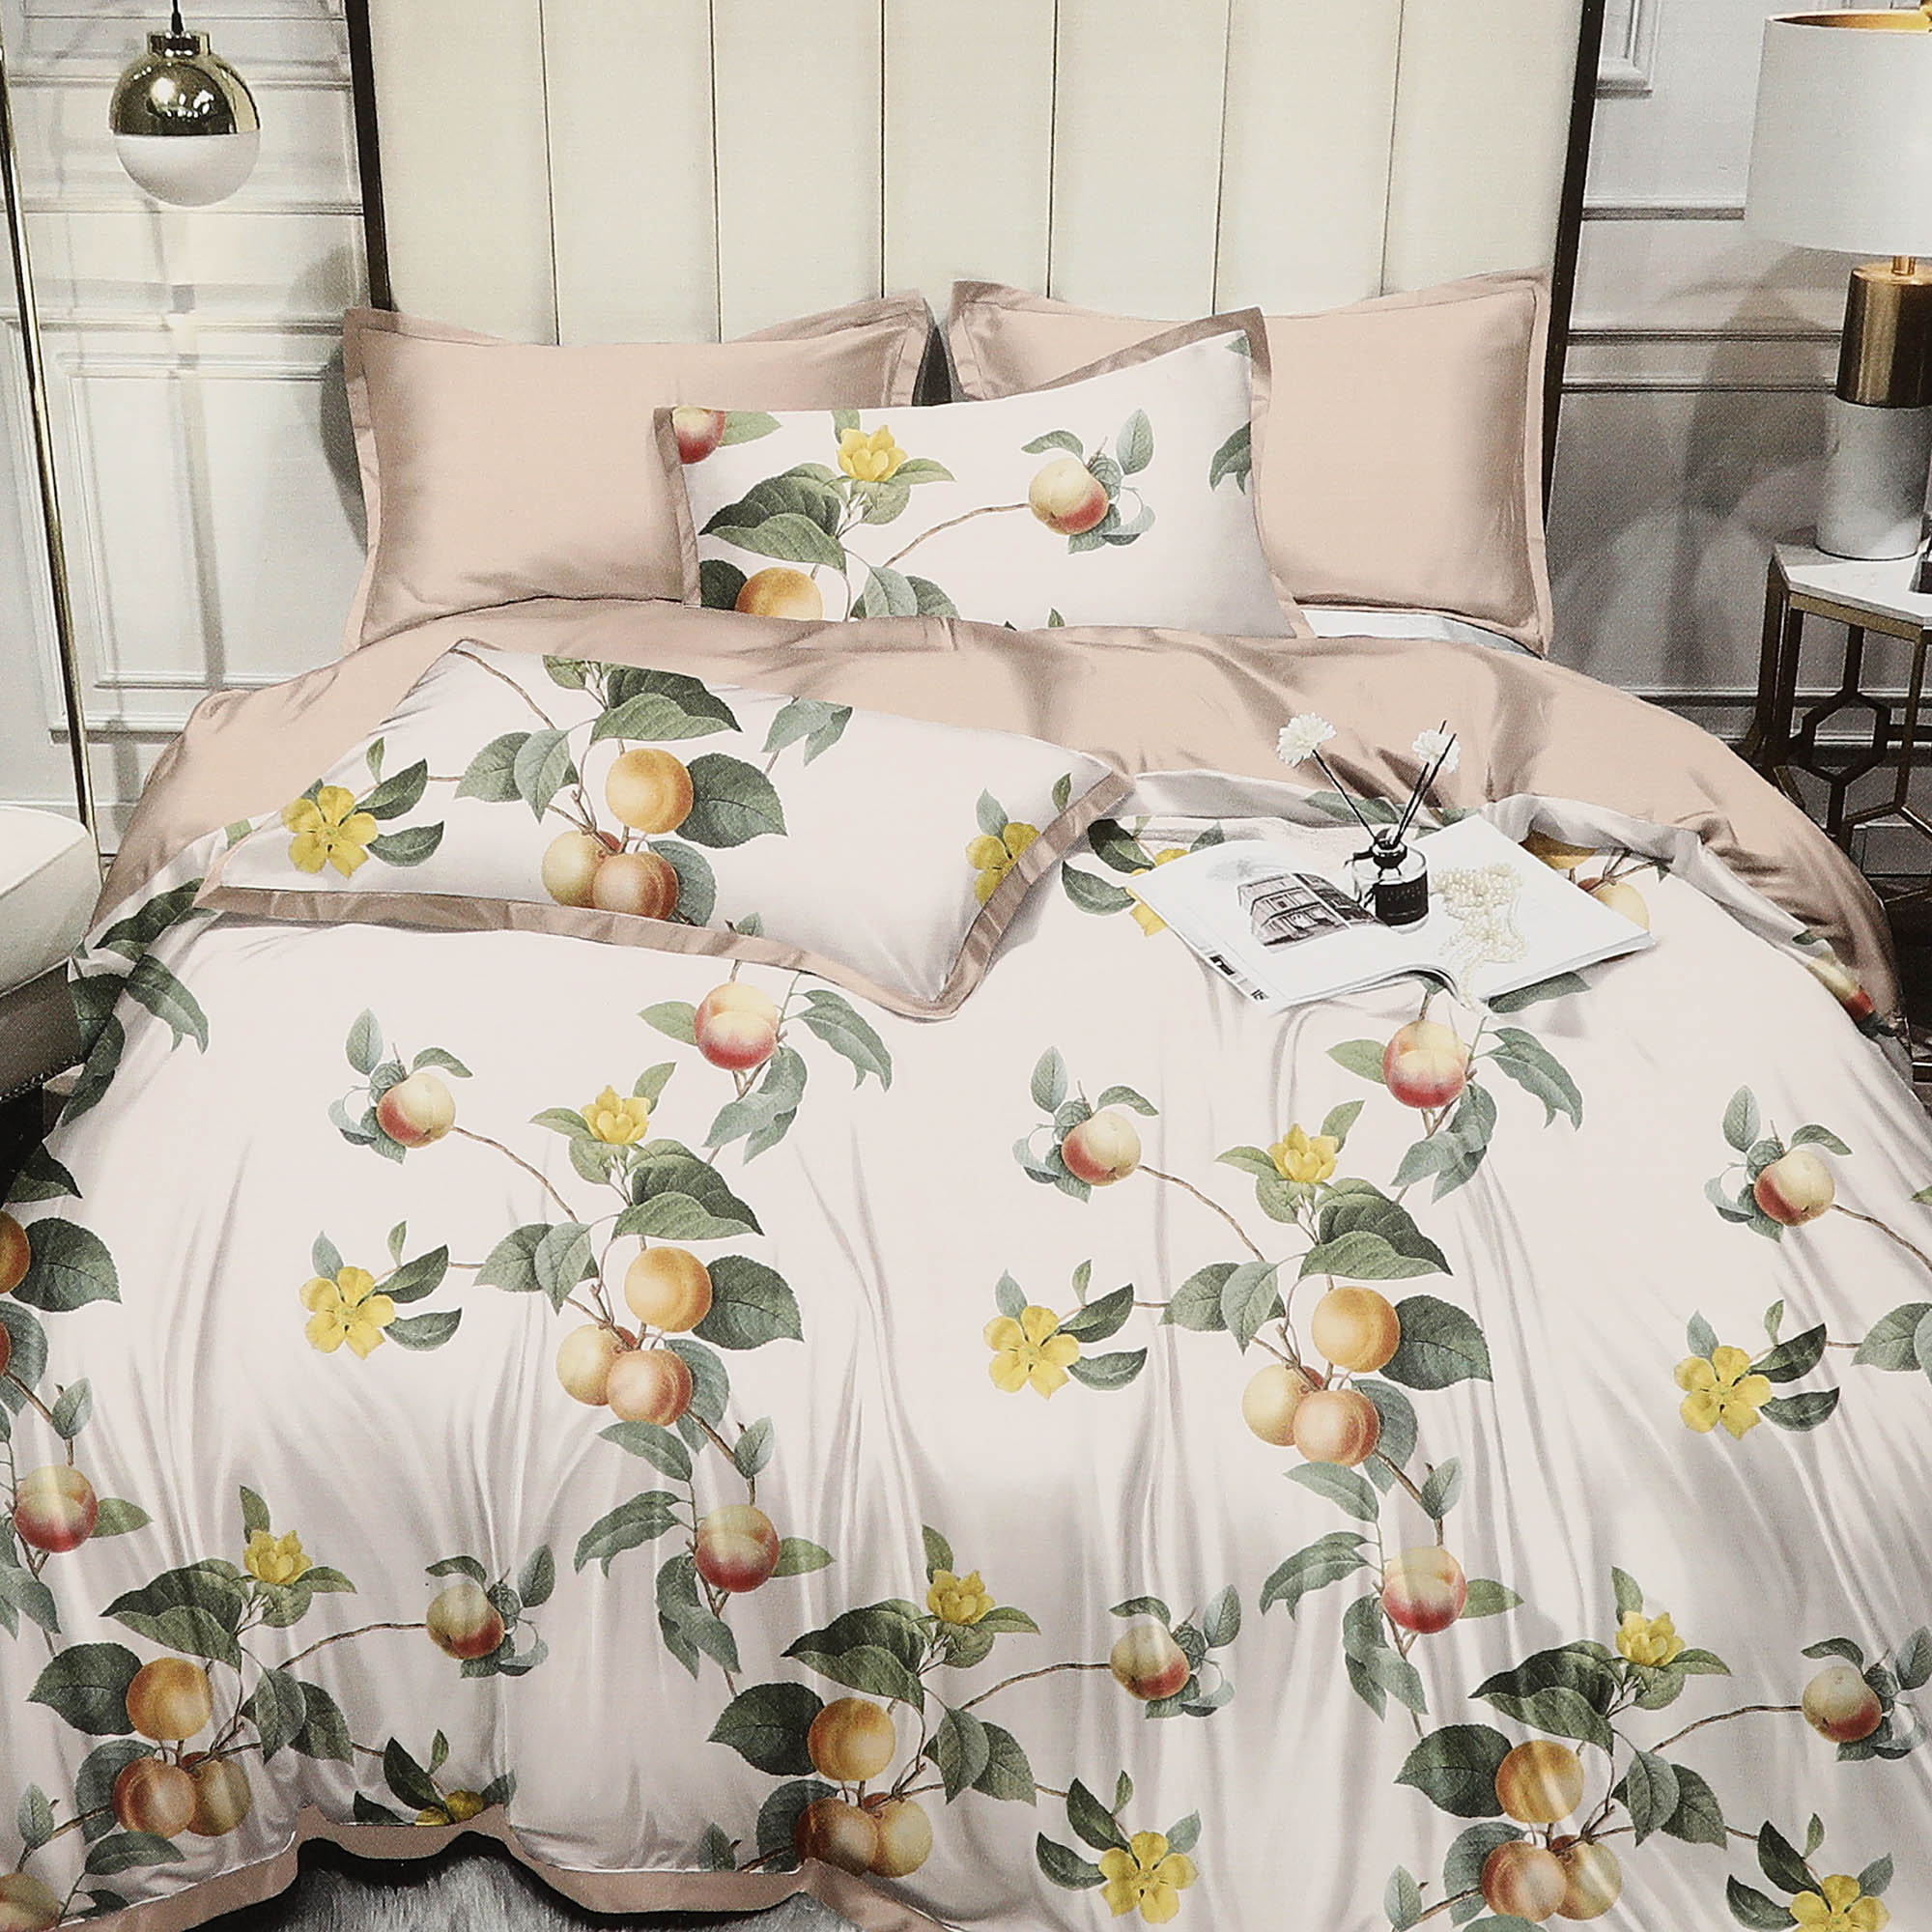 Комплект постельного белья Wonne Traum Elegance Apple garden cream Двуспальный комплект для вьющихся растений green apple glscl 1 60x180 см